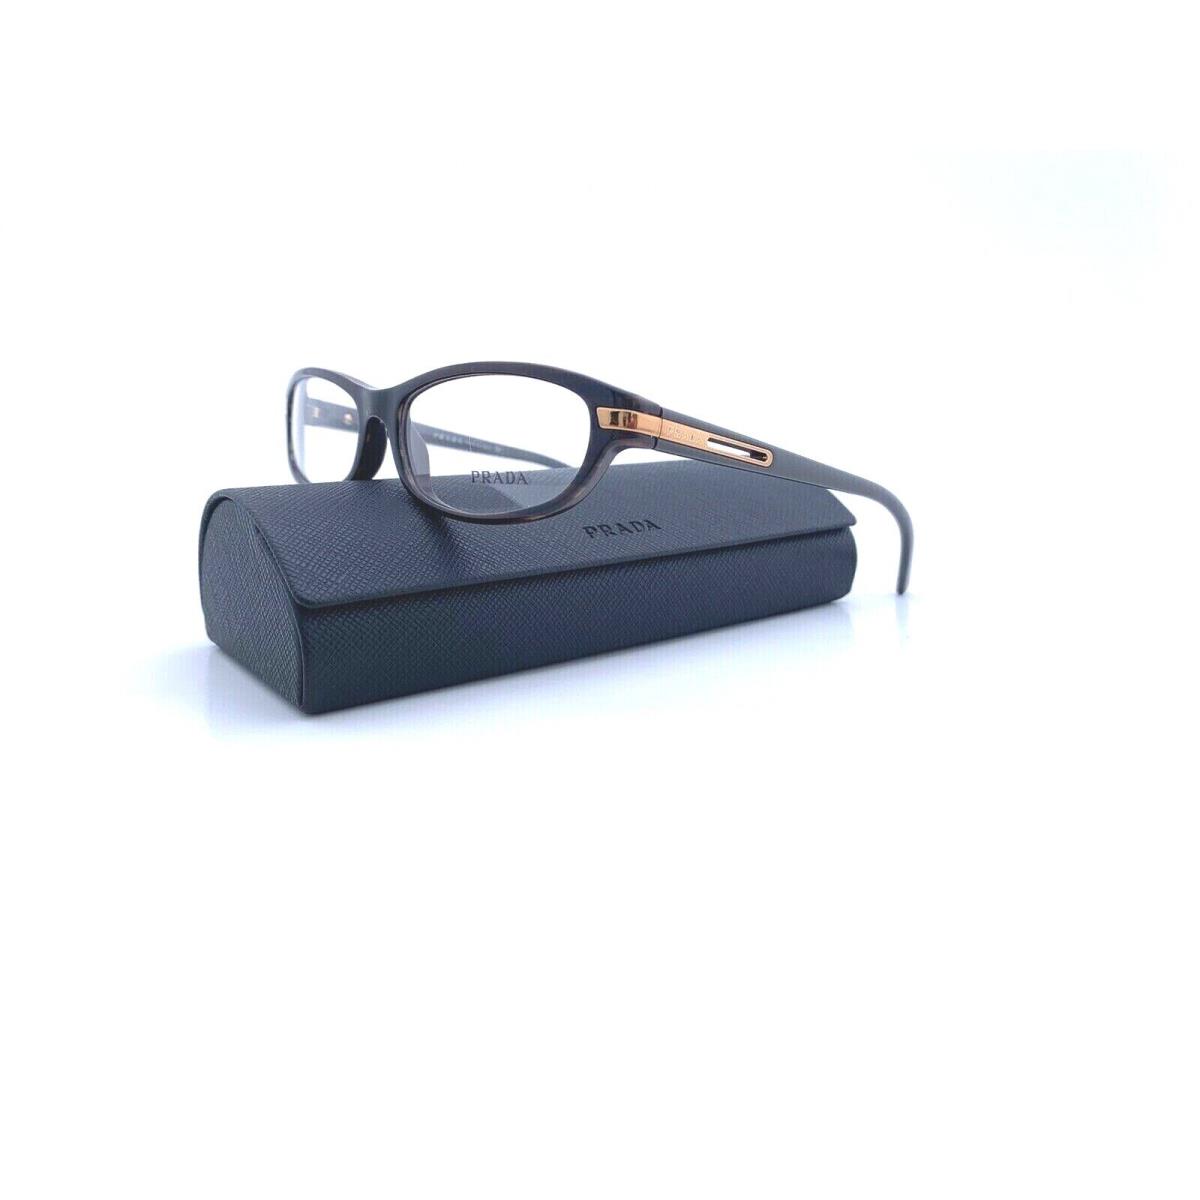 Prada Frames Acetate Brown Gold RX Eyeglasses Vpr 061 7N6101 53 16 135 Italy - Frame: Brown